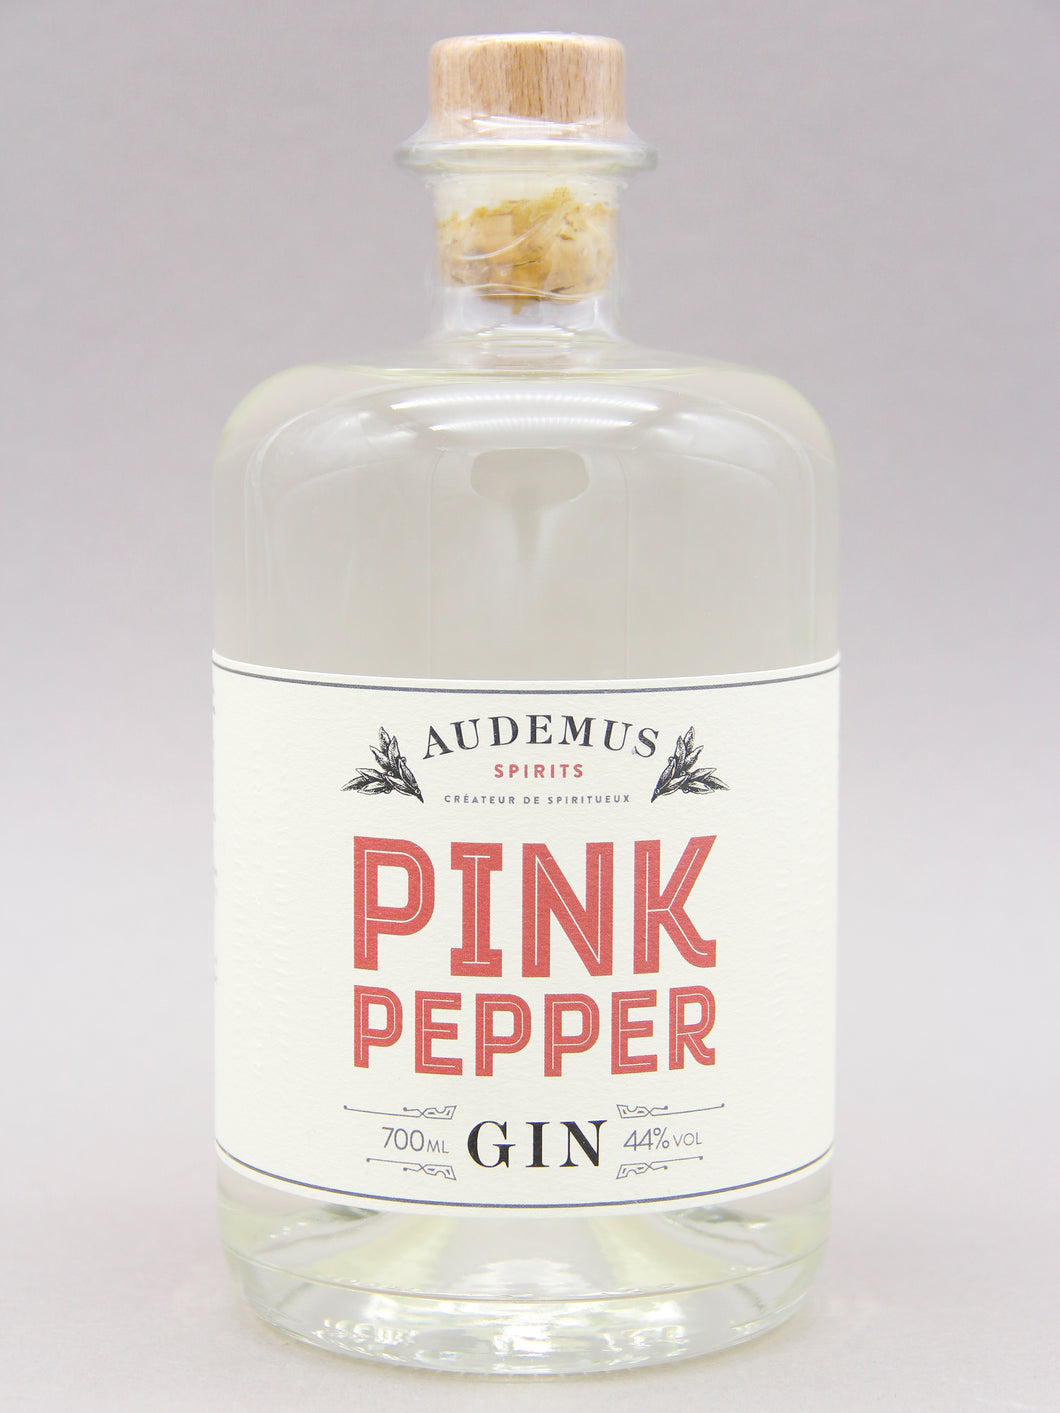 Audemus Spirits Pink Pepper Gin, Cognac, France (44%, 70cl)